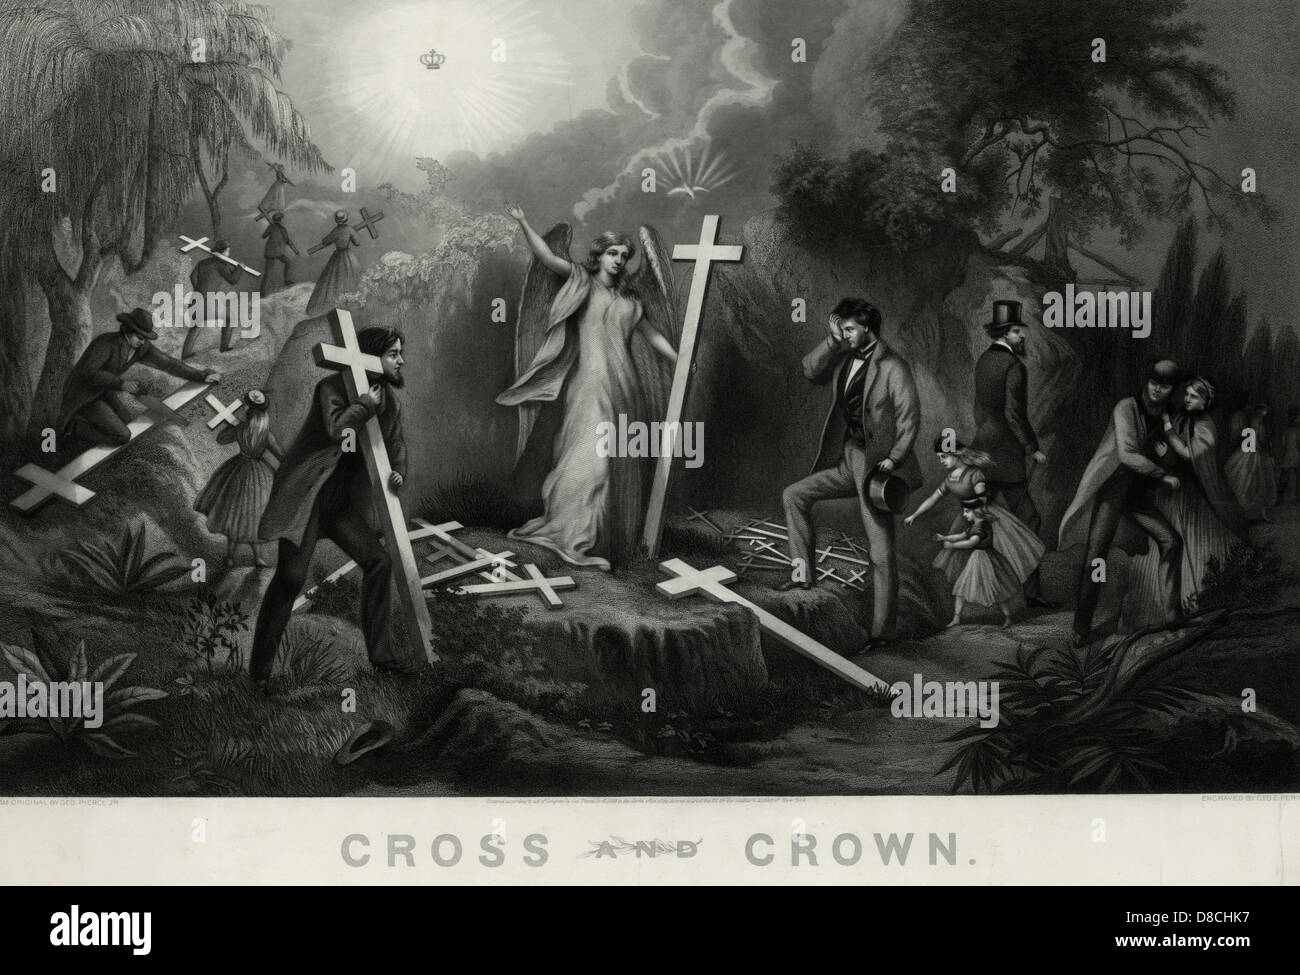 Kreuz und Krone - einen Engel Übergabe Kreuze an Menschen durchzuführen. Stockfoto